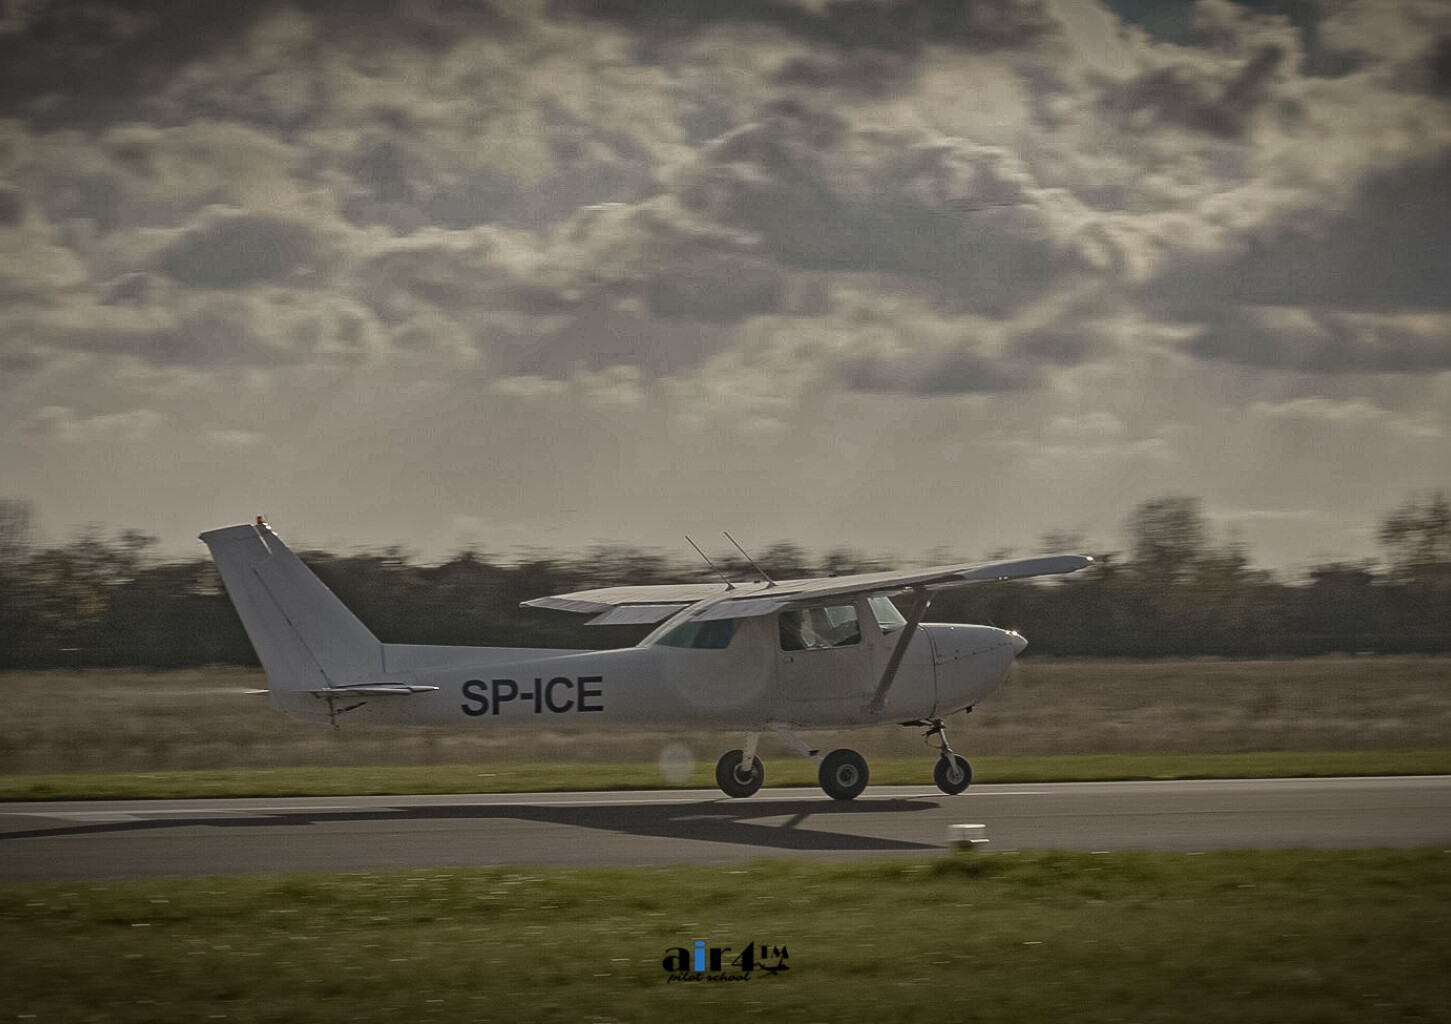 Lot Zapoznawczy Samolotem Cessna 150 M | Gliwice